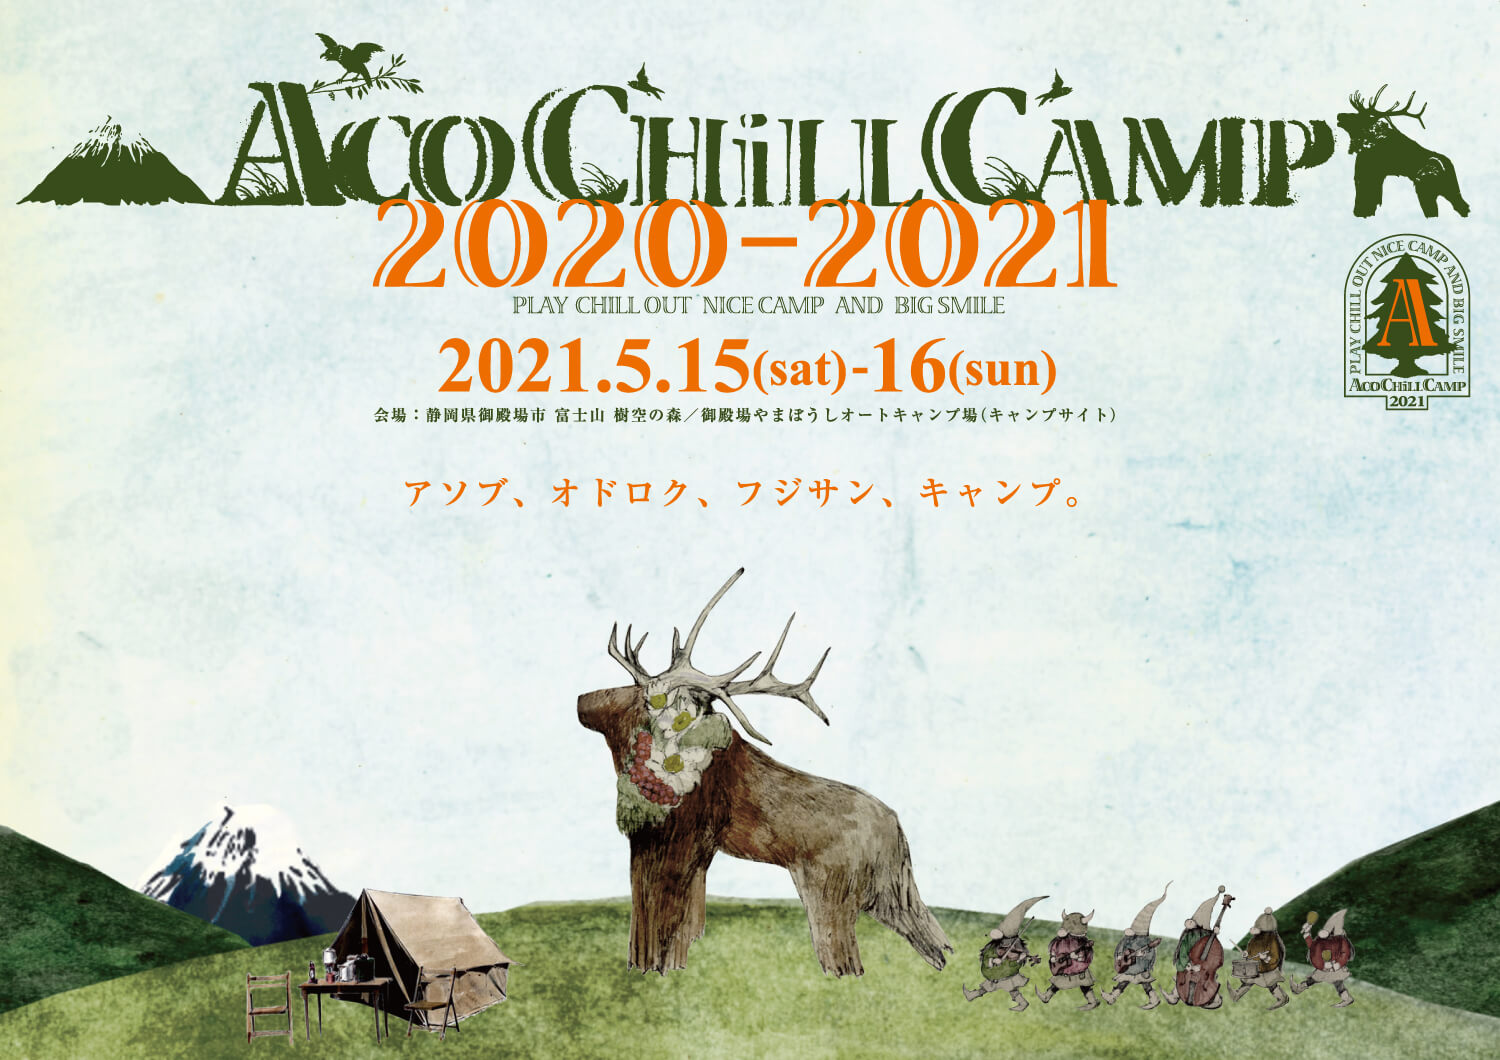 【アコチル】鈴木翼出演決定!『ACO CHiLL CAMP 2020-2021』